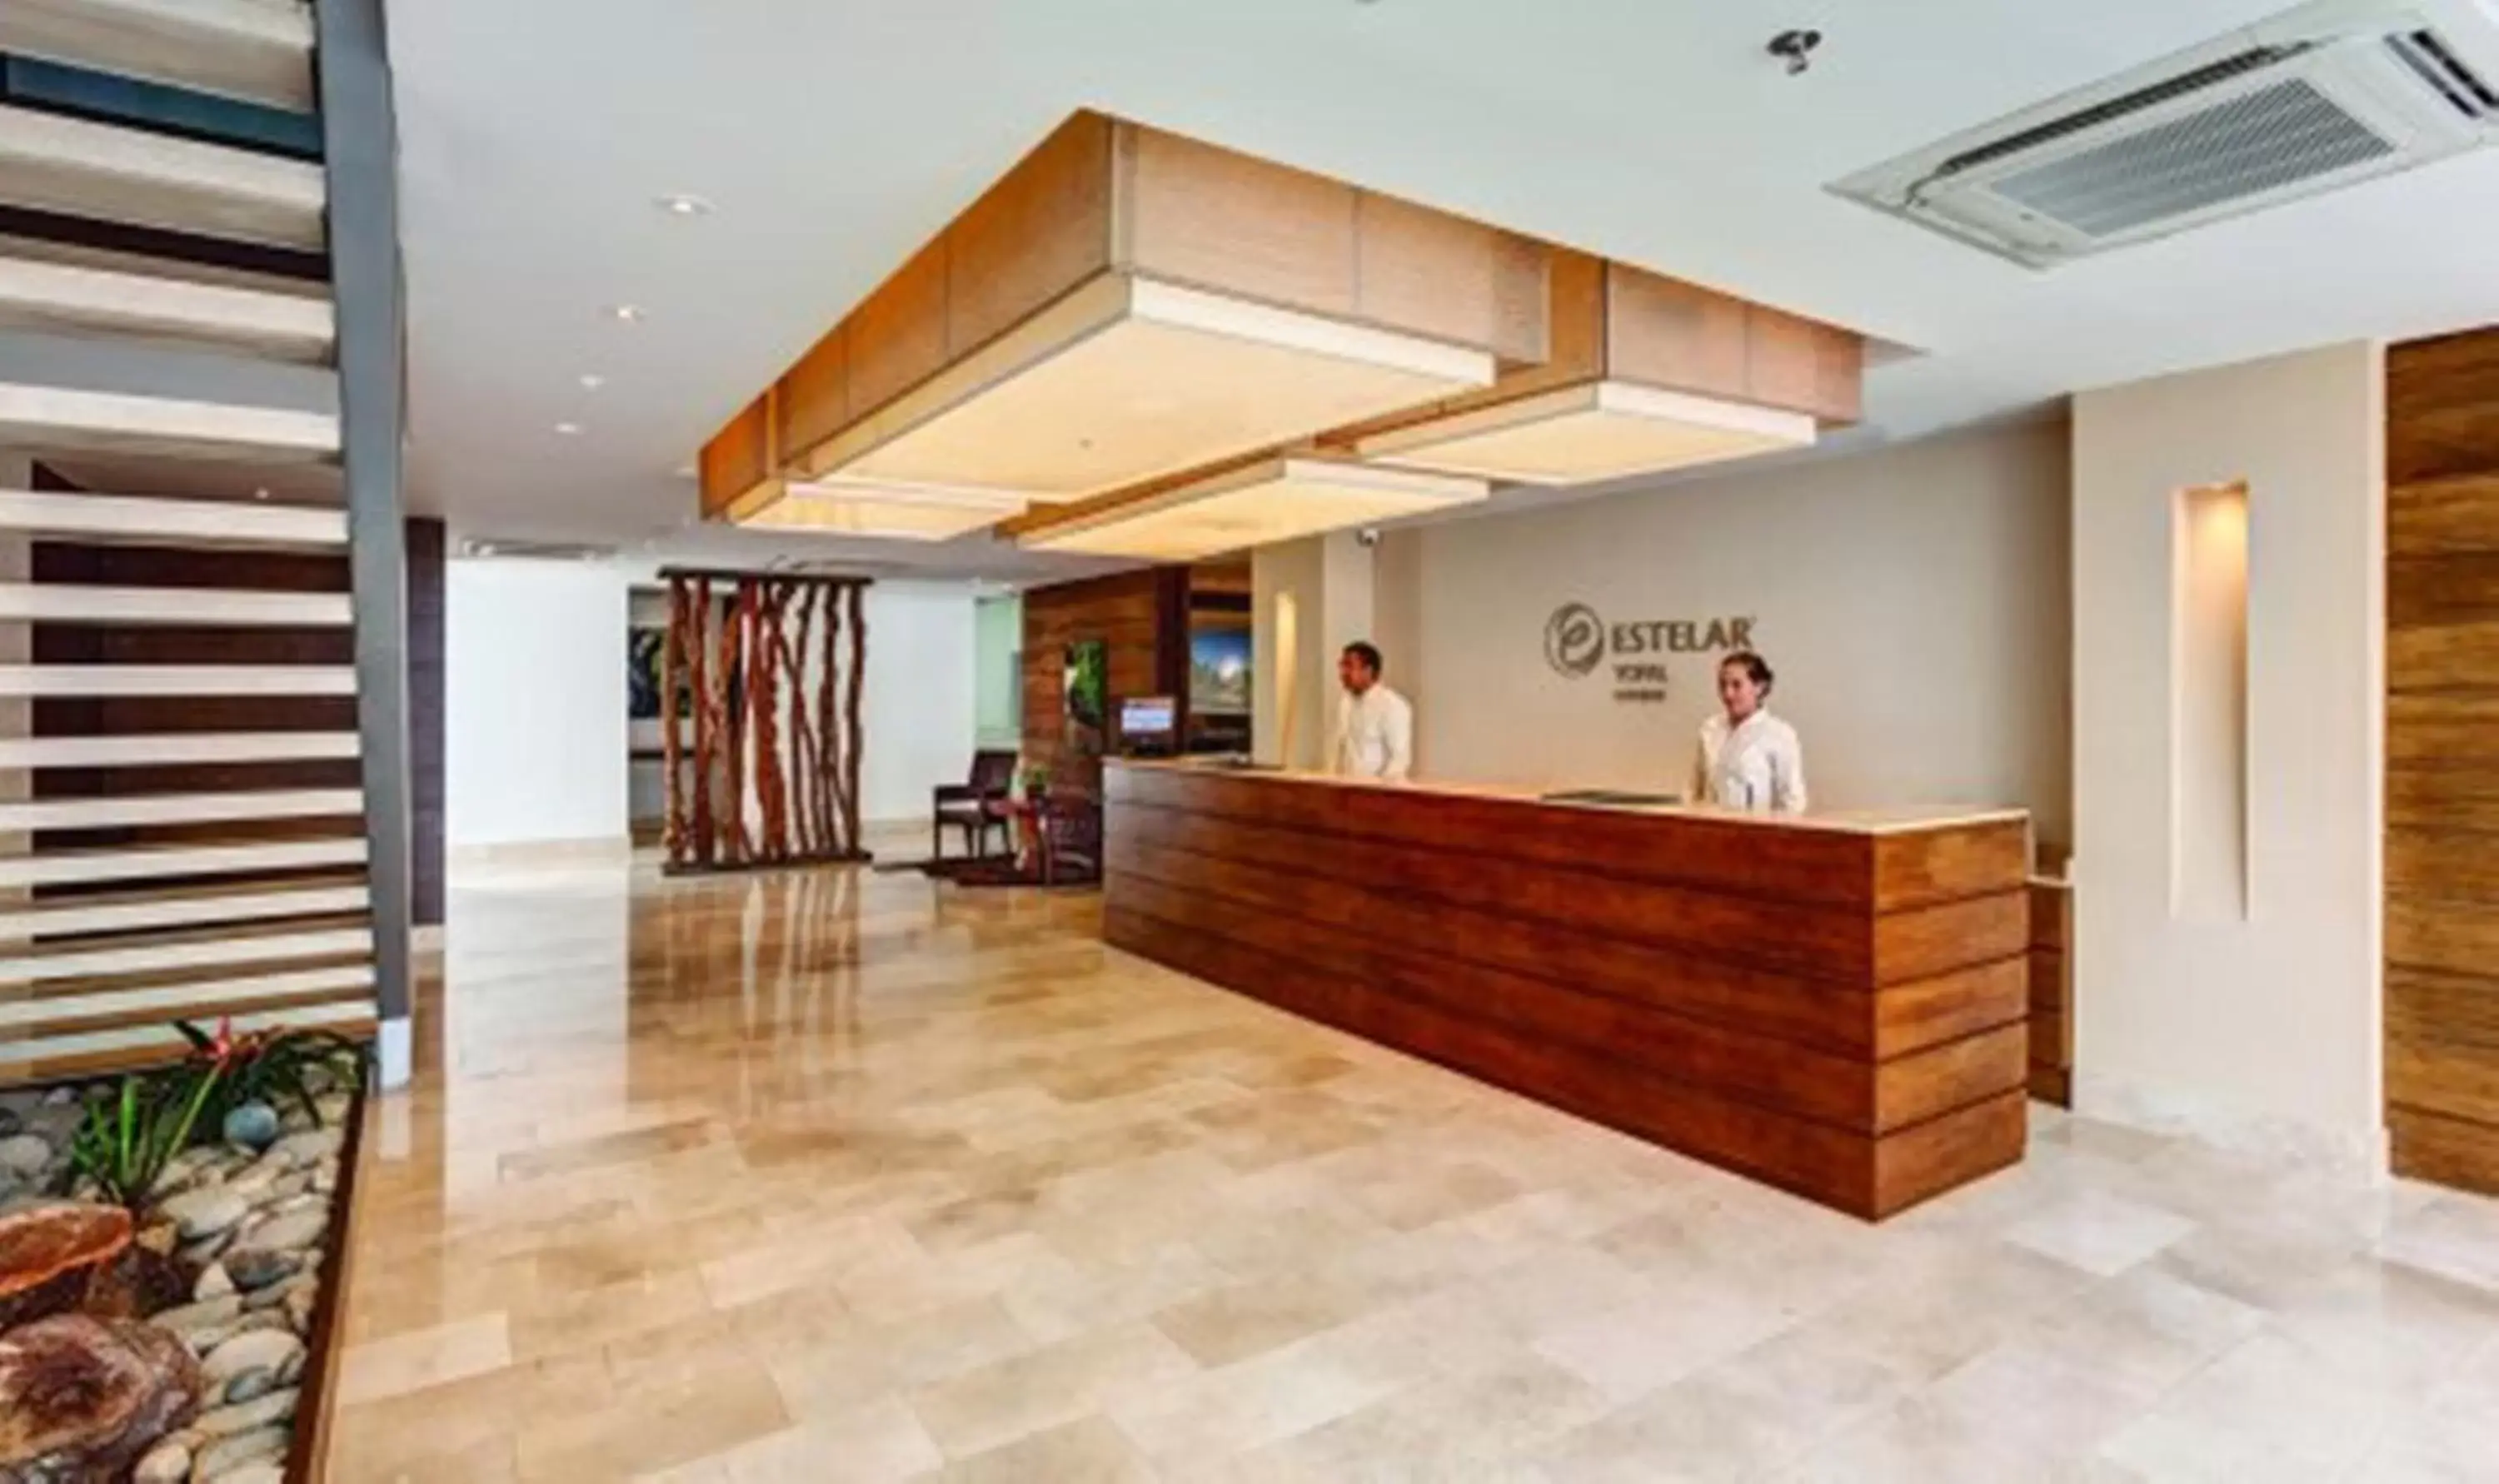 Lobby or reception, Lobby/Reception in Hotel Estelar Yopal